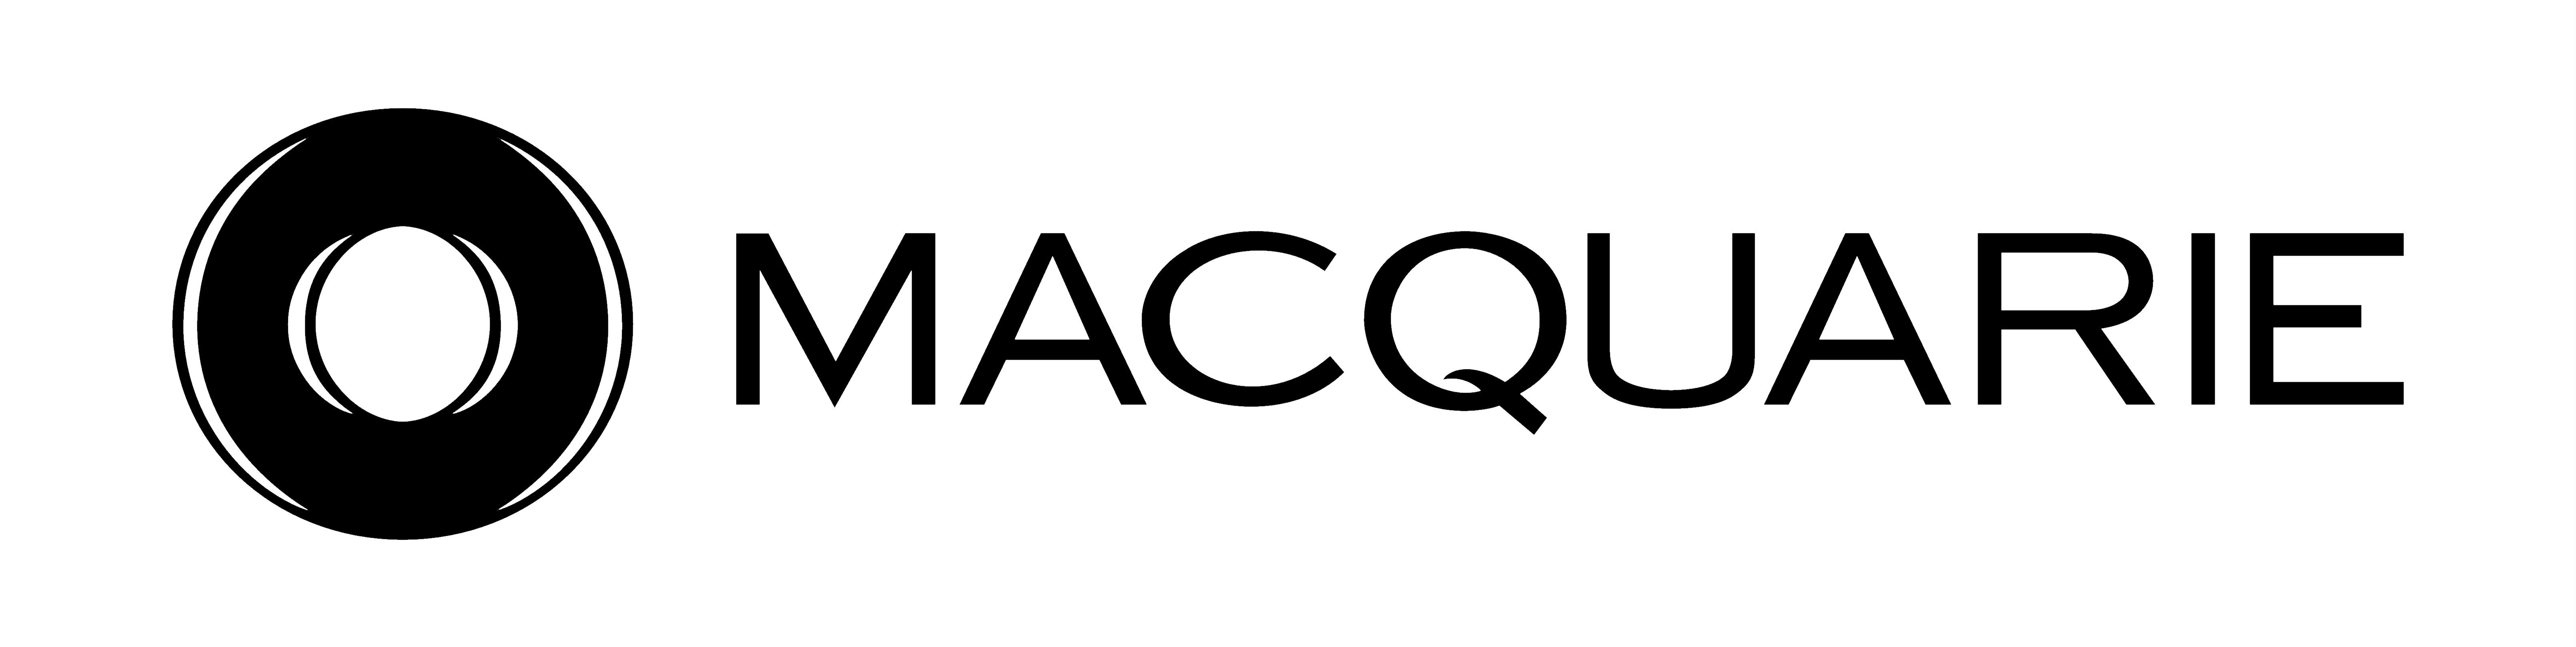 پرونده:Macquarie logo.p